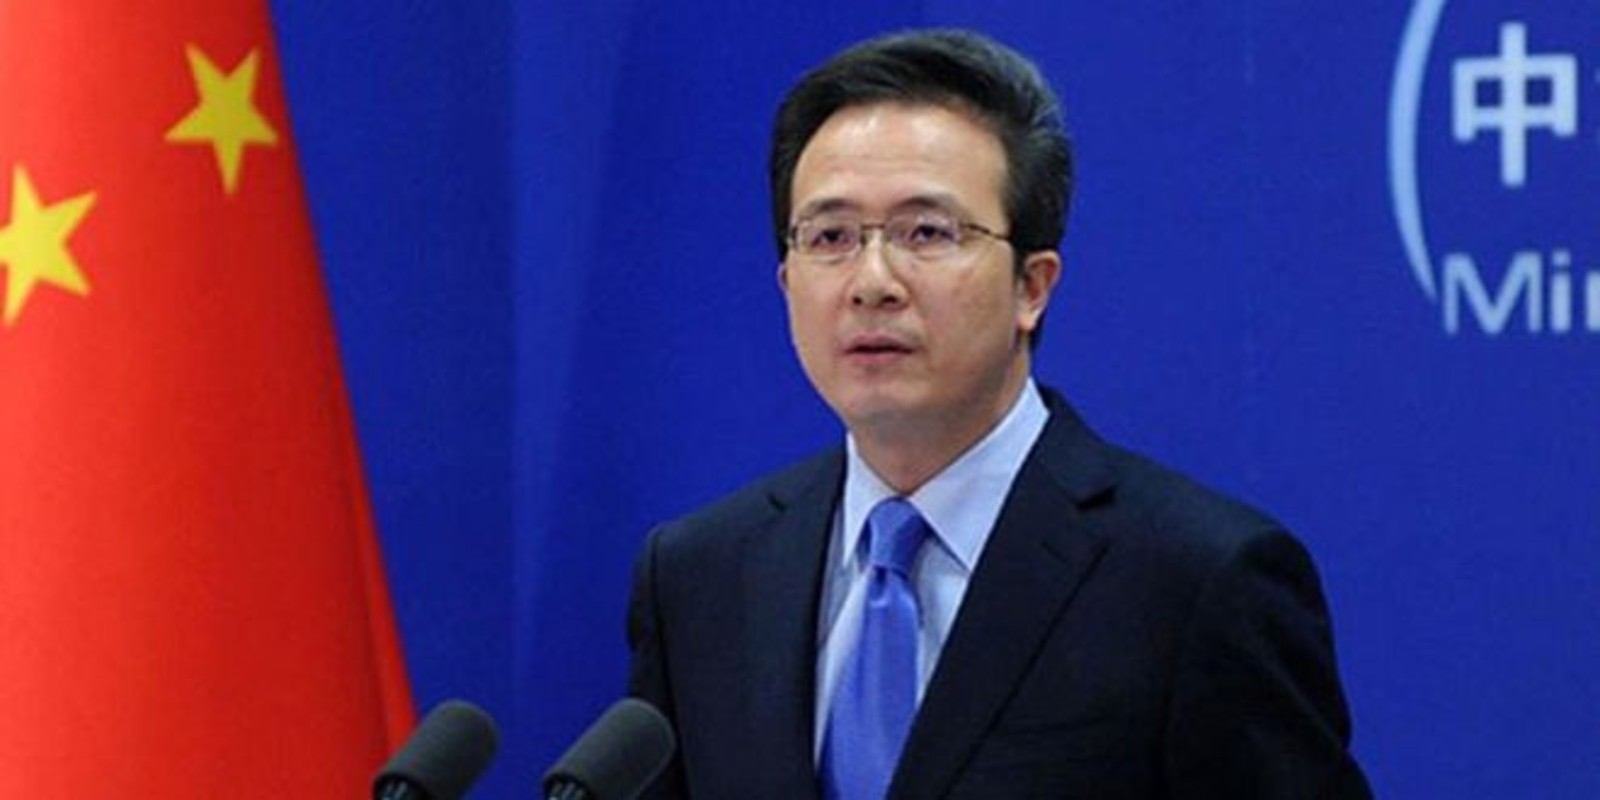 ممثل الصين بالأمم المتحدة يدعو للدفع قدما بحل الدولتين ووقف تقاعس المجتمع الدولي